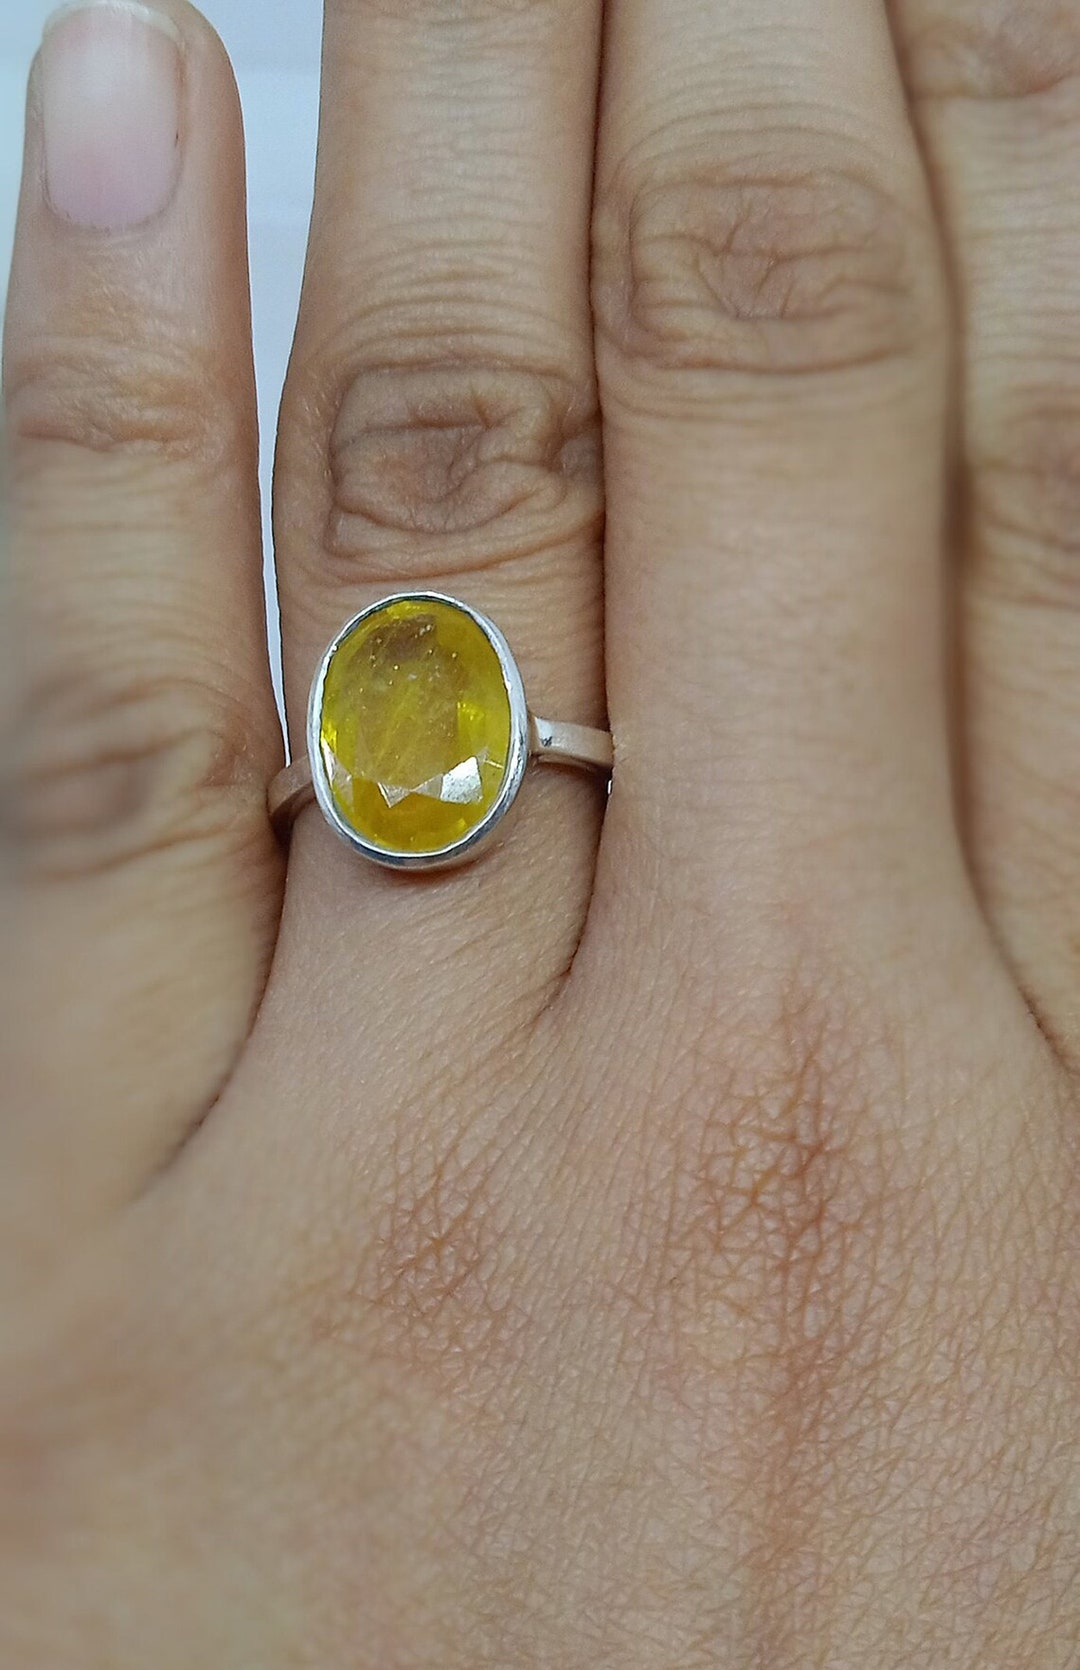 The Erudite Yellow Sapphire Gold Ring